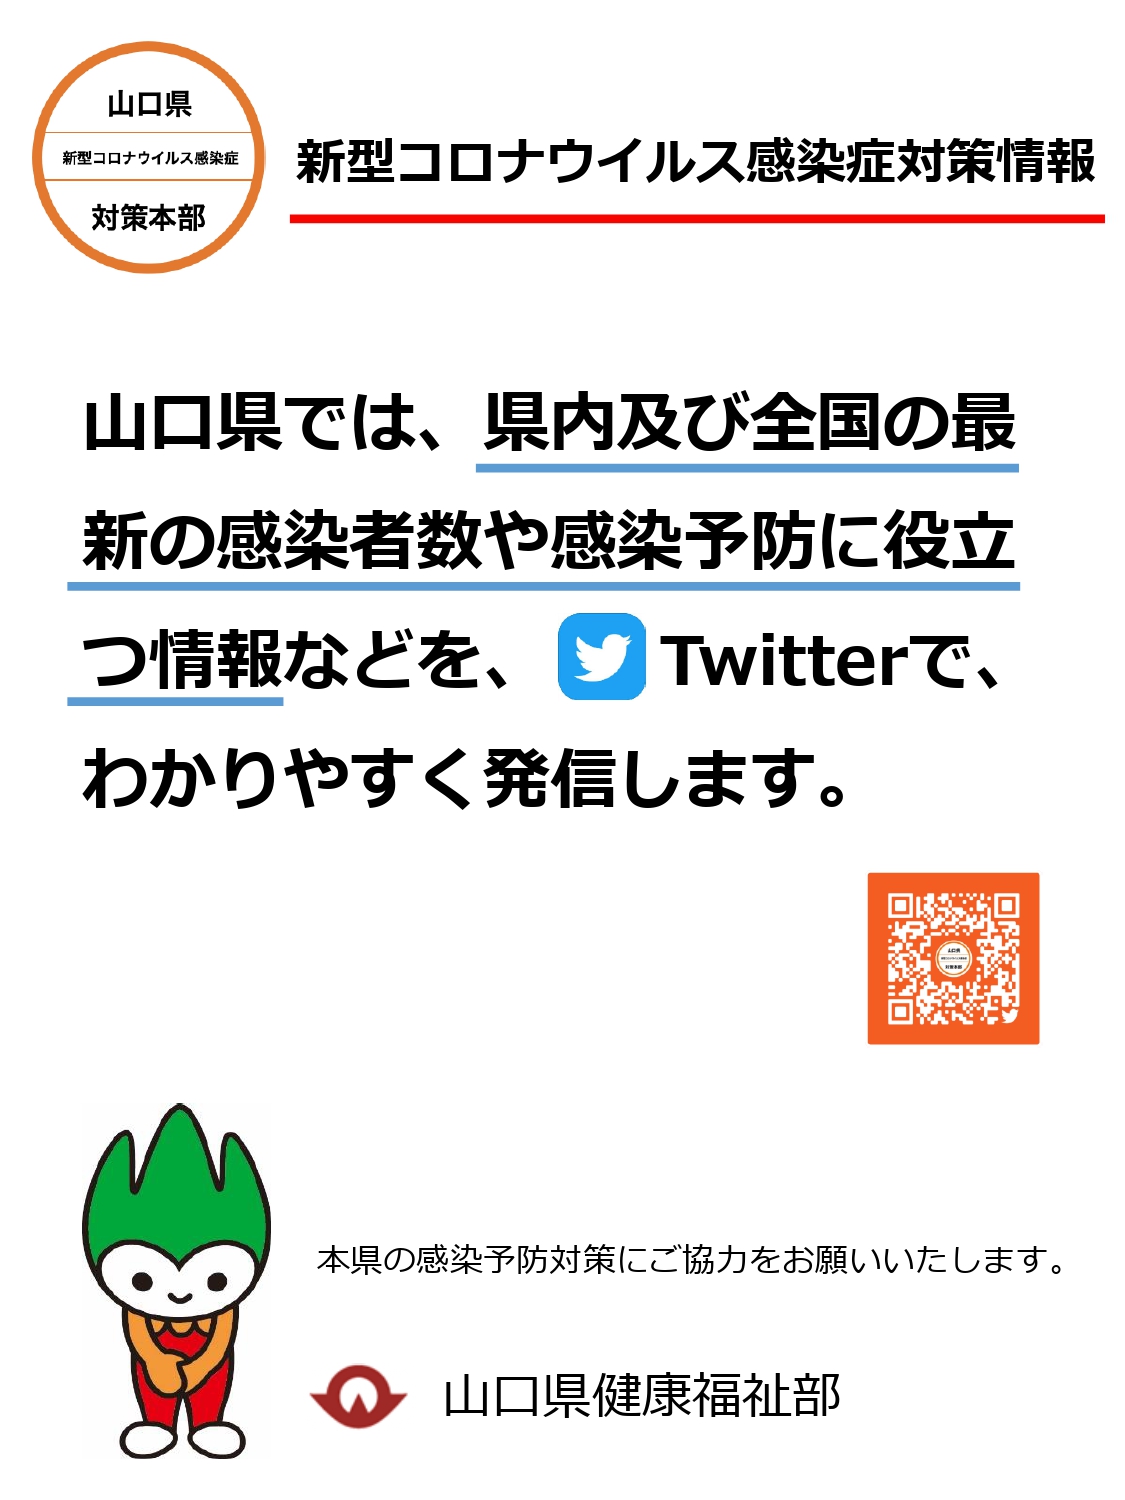 山口県新型コロナウイルス感染症対策本部Twitterアカウント開設 | 地域のトピックス